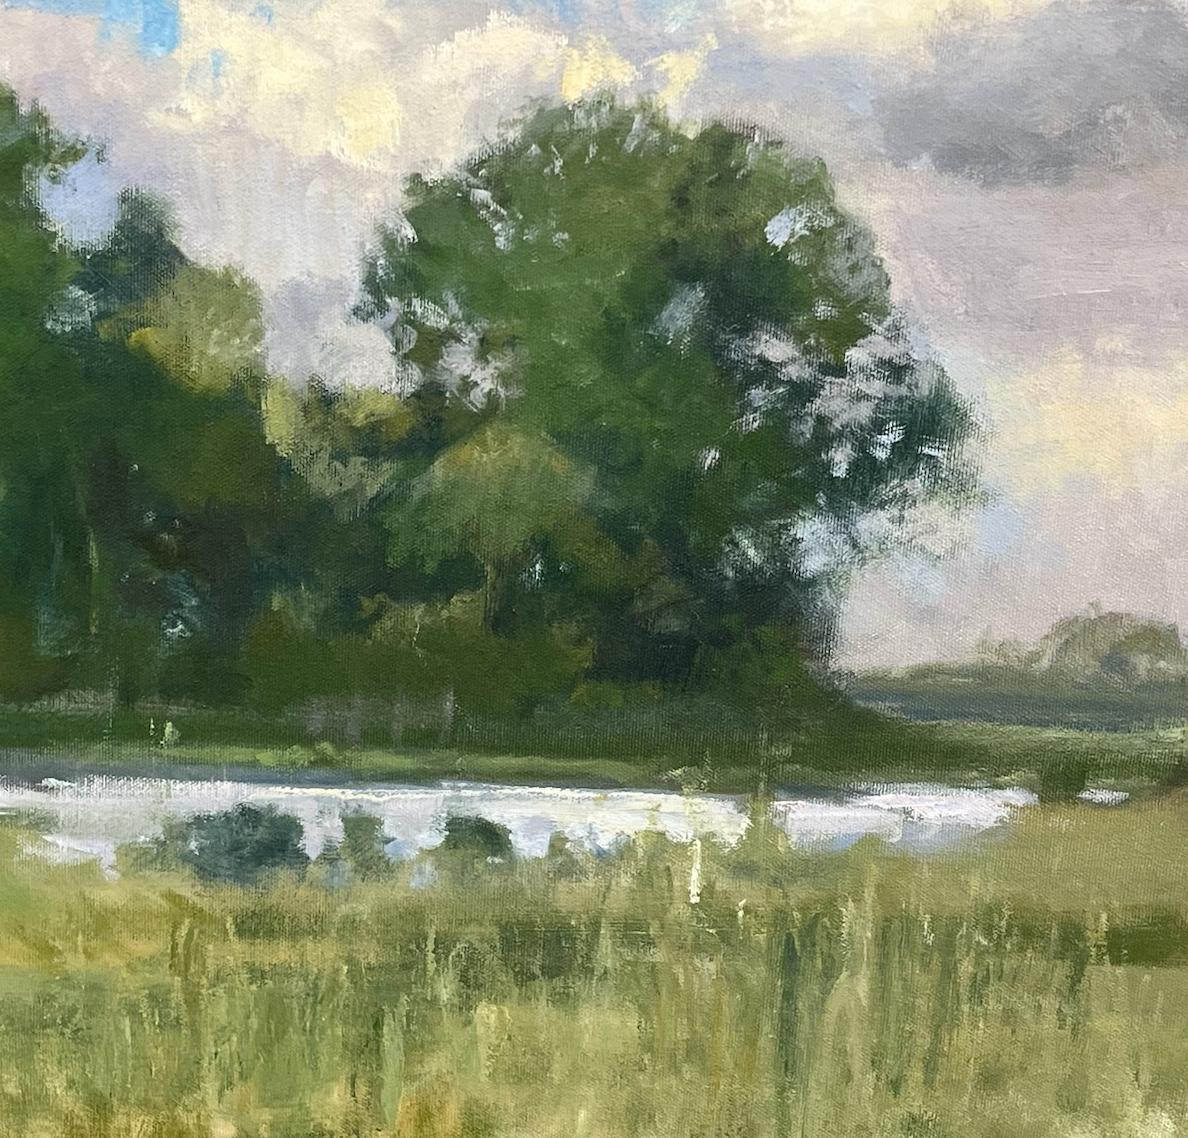 RECHERCHER LA GRATUITÉ DES FRAIS DE PORT AU MOMENT DU PAIEMENT  PRIX NÉGOCIABLE
 Ranch George   est un paysage impressionniste qui a été peint près de Richmond TX, à environ 30 miles de Houston.  George Ranch Trees est une peinture de paysage